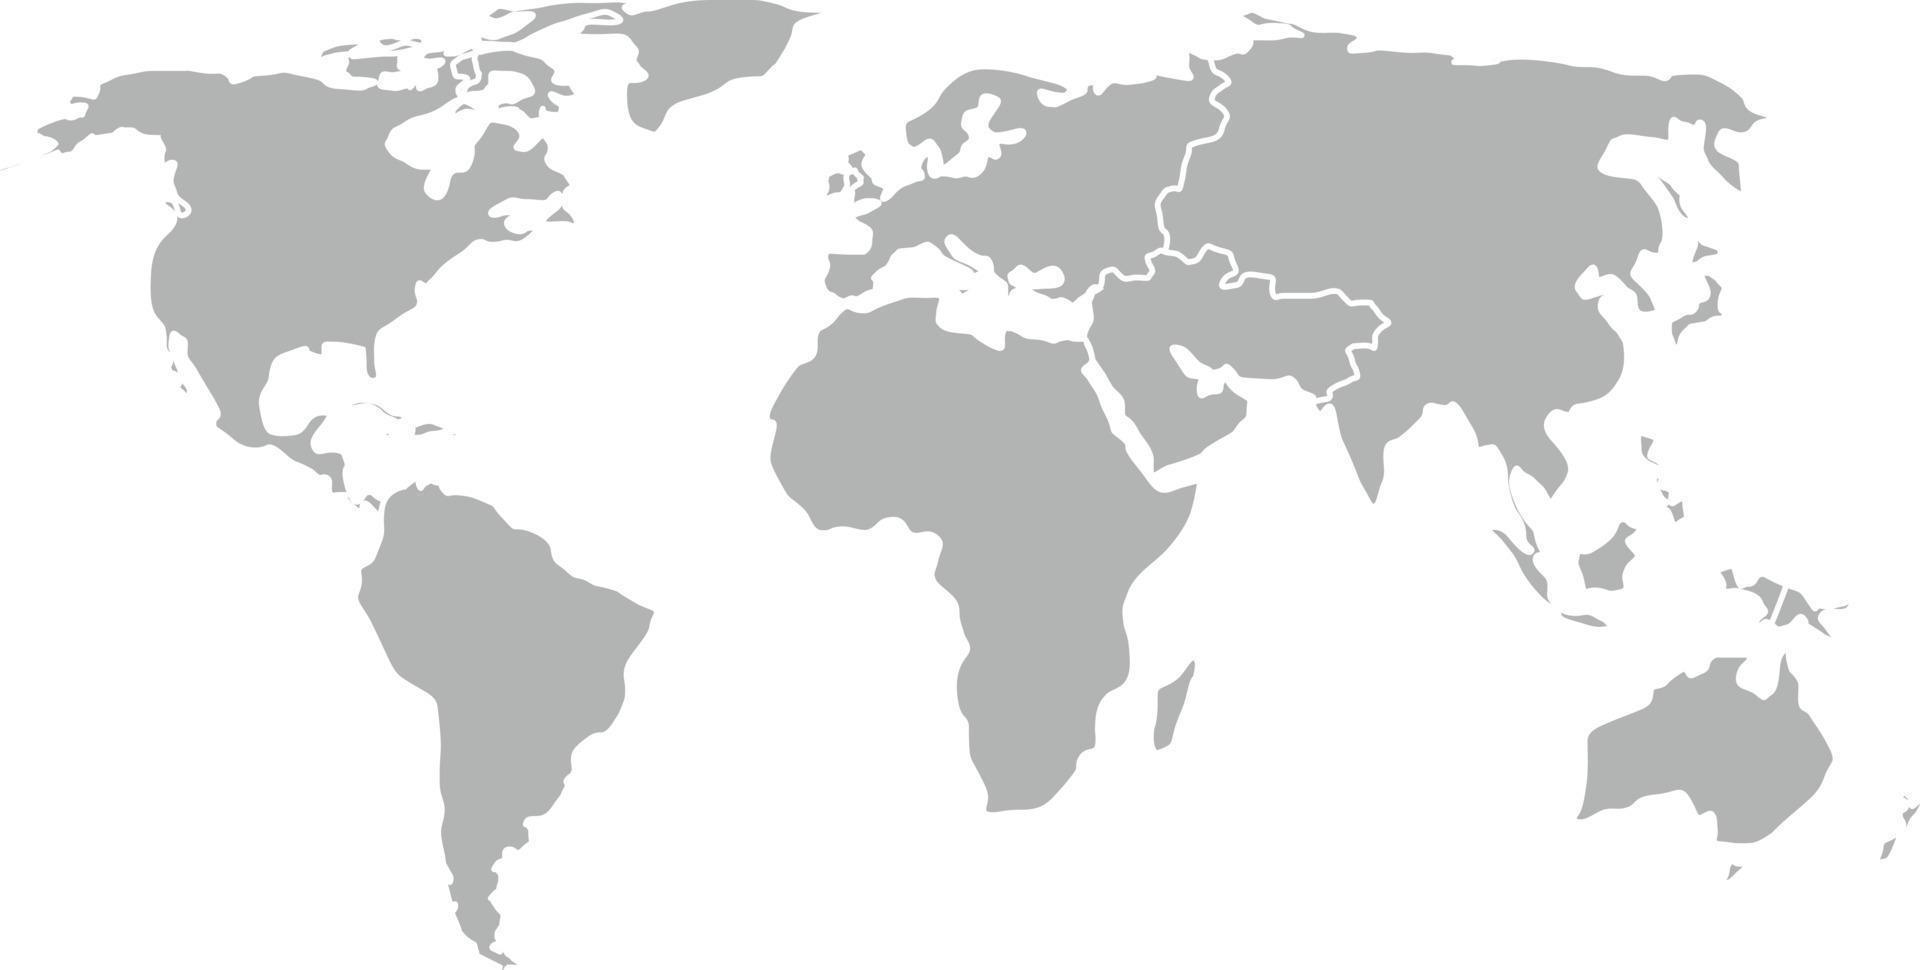 Vector illustration globe world map isolated on white background